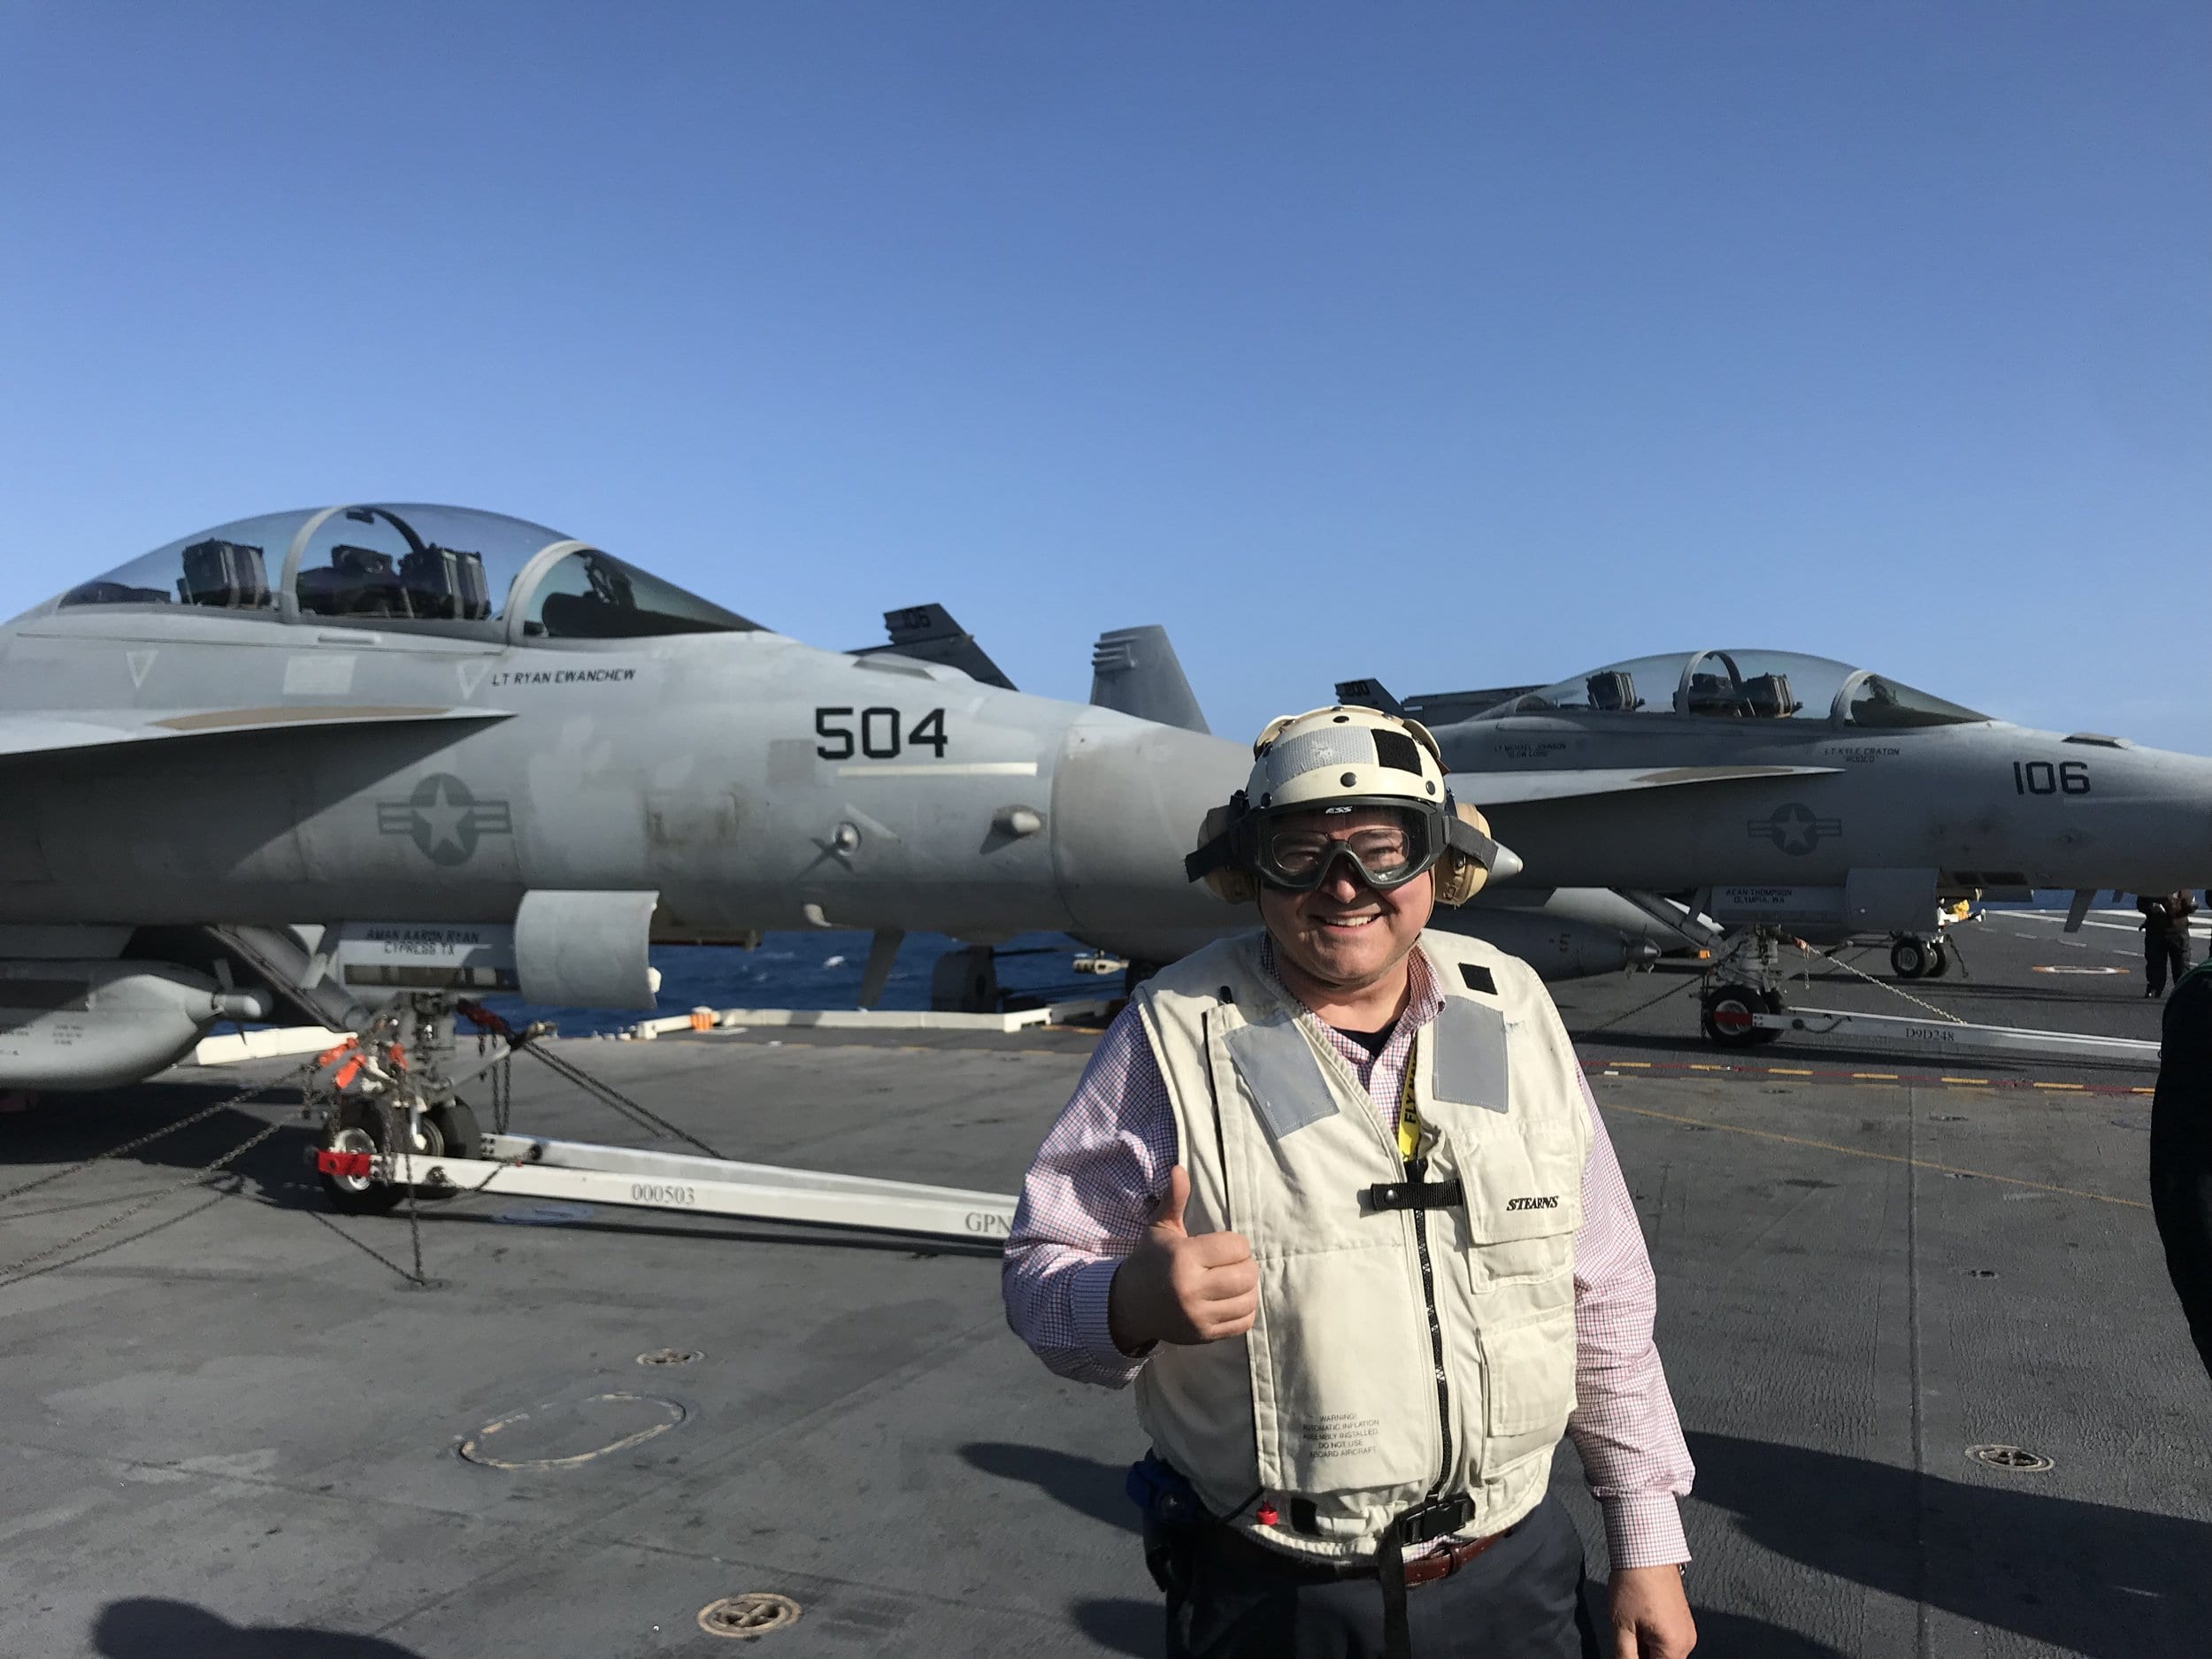 Bruce Granger’s Distinguished Visitor Navy Embark Trip